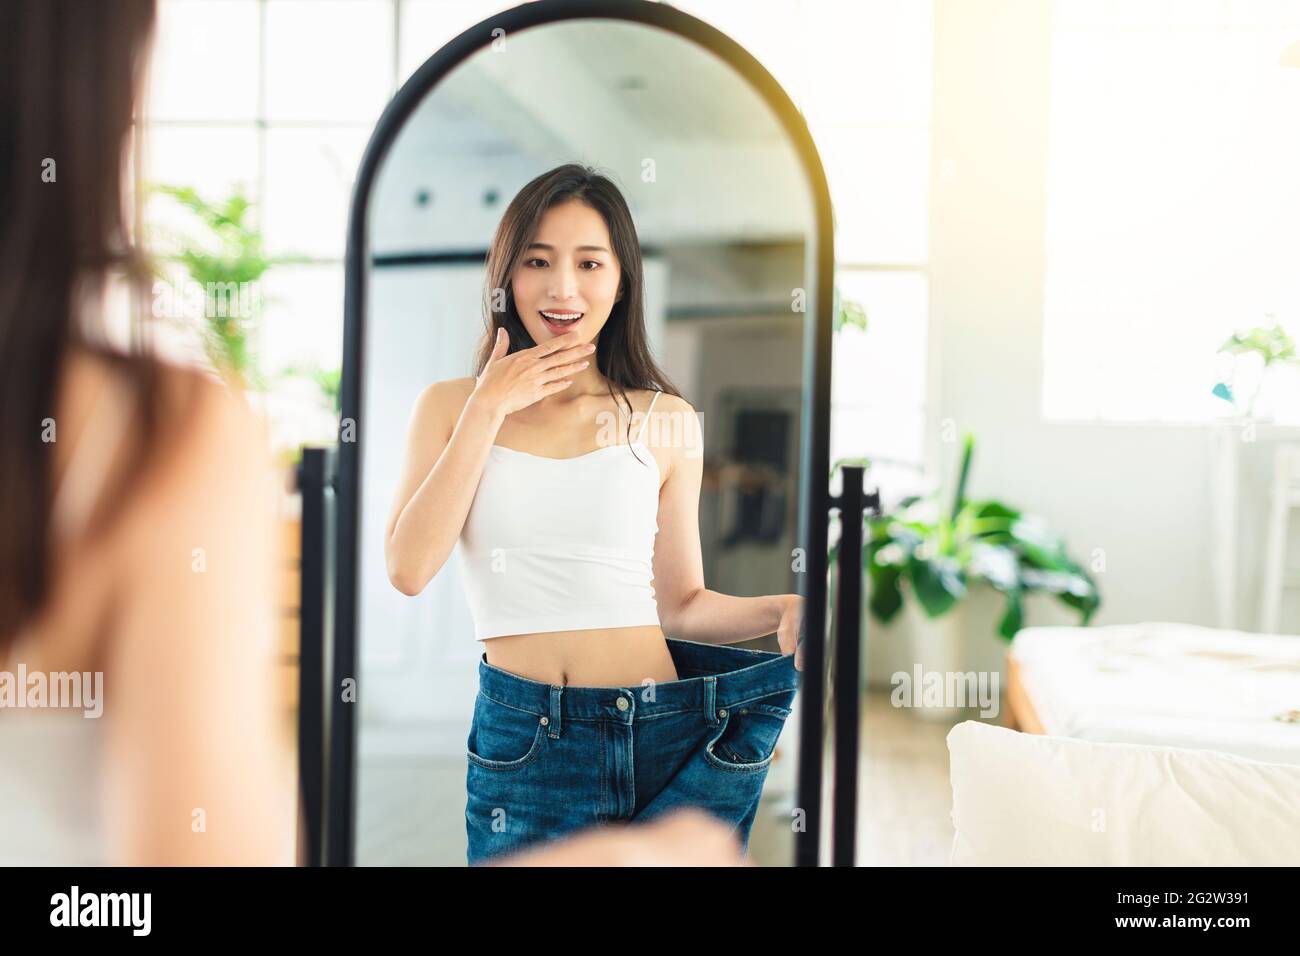 Die junge Frau, die große Jeans trägt, schaut sich ihre Figur vor dem Spiegel an, sehr glücklich, dass es ihr gelungen ist, Gewicht zu verlieren. Stockfoto